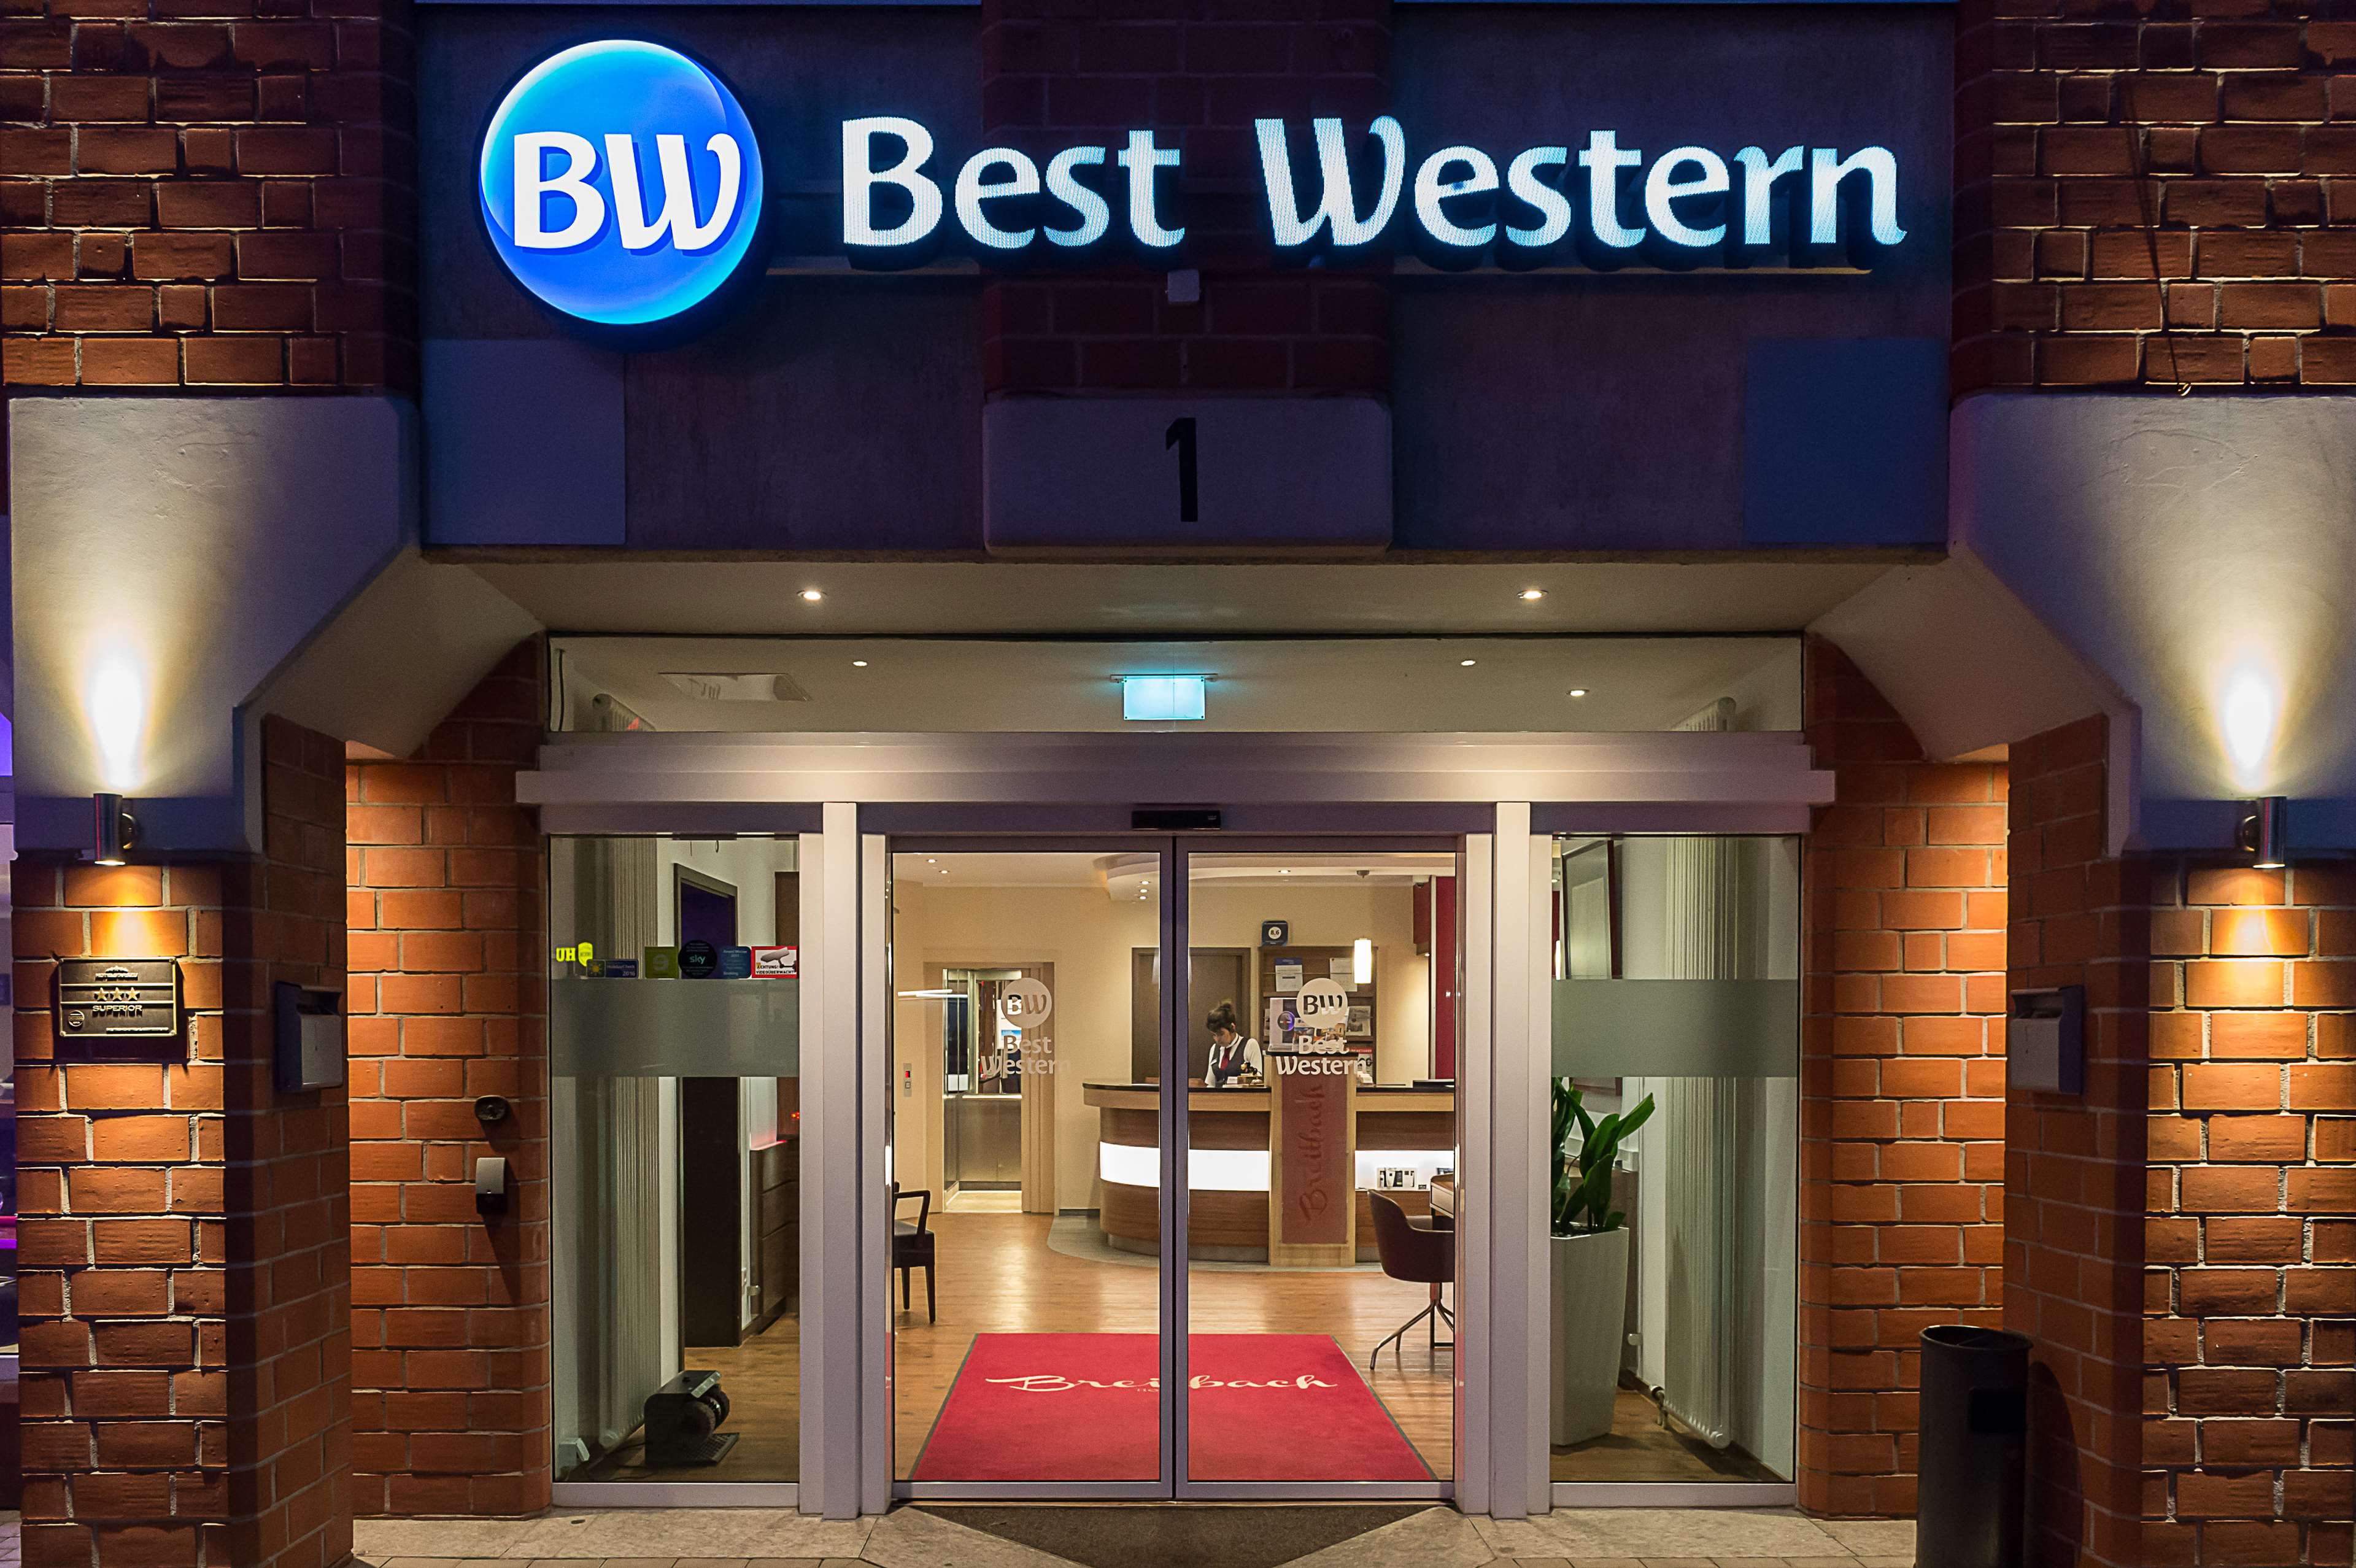 Best Western Hotel Breitbach, Stadionring 1 in Ratingen